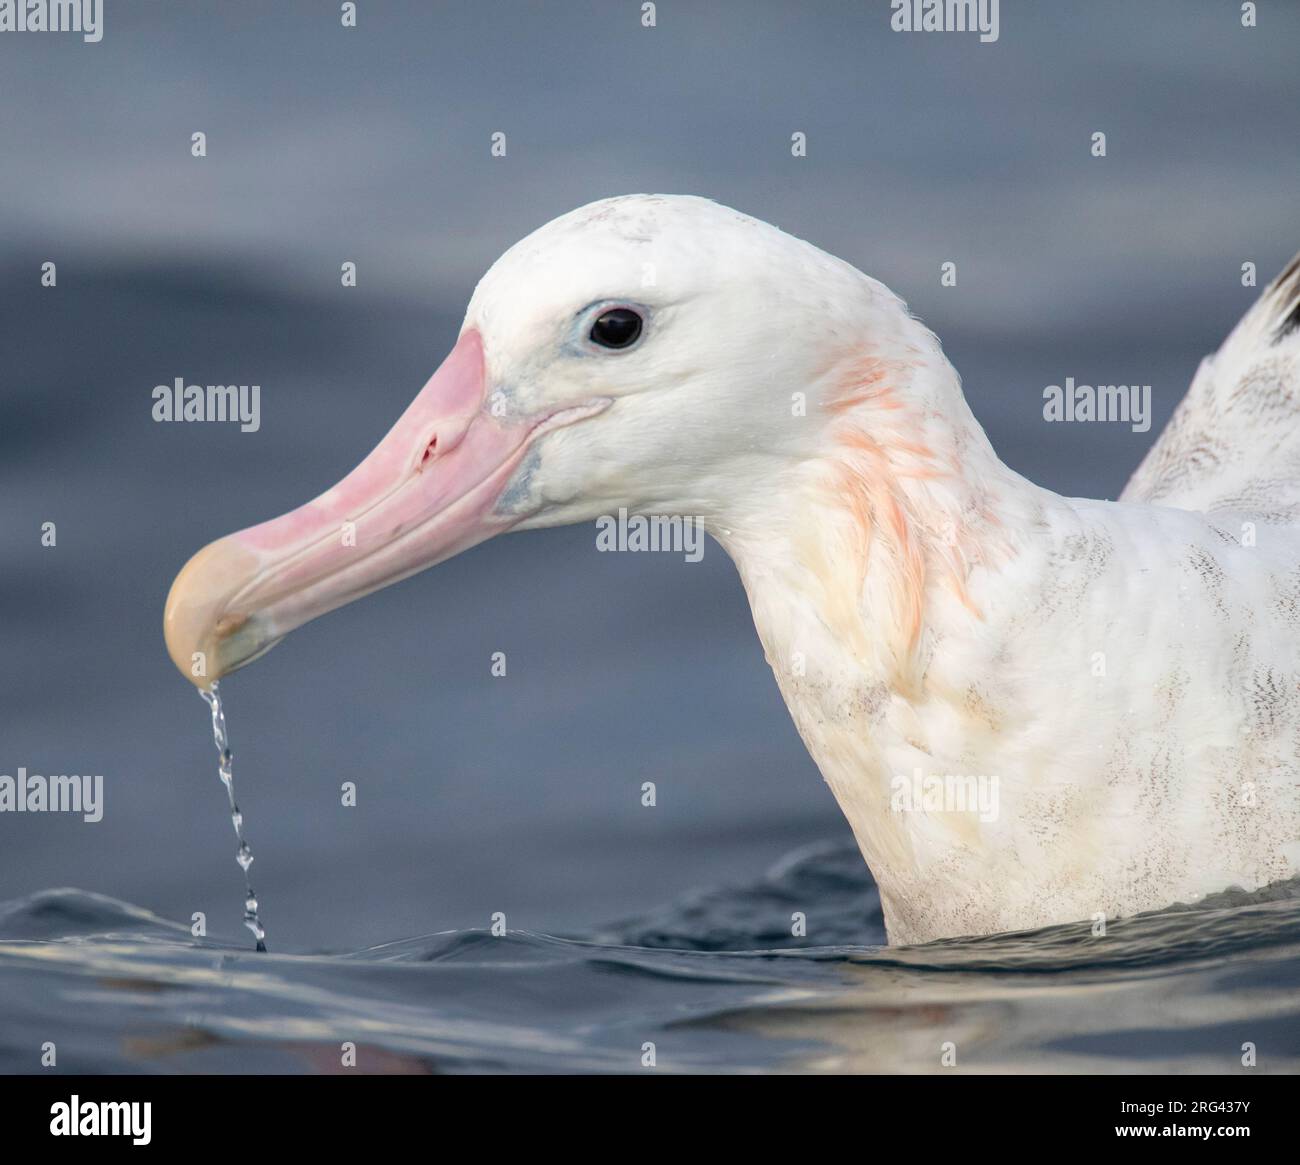 Gros plan sur un albatros de Gibson (Diomedea gibsoni) nageant en mer au large de Kaikoura, Nouvelle-Zélande. L'eau coule de son énorme facture rose. Banque D'Images